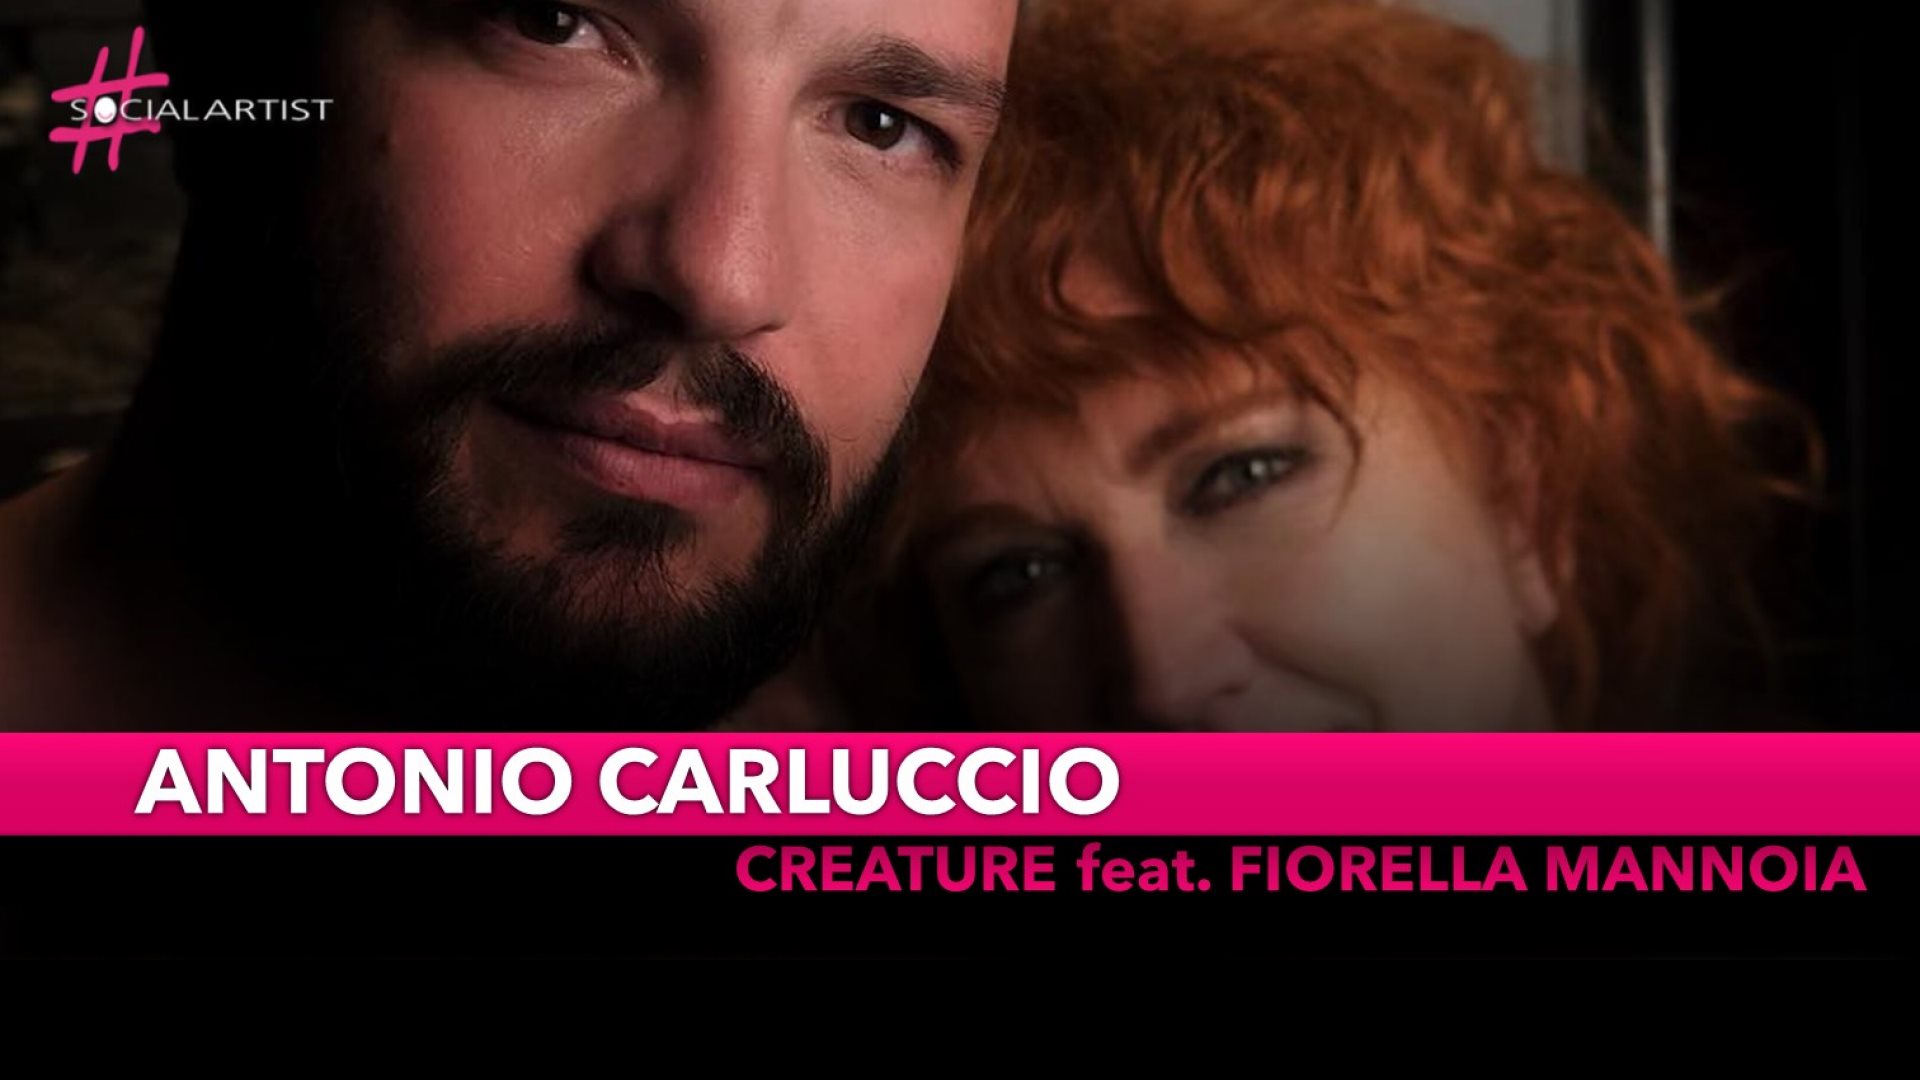 Antonio Carluccio, in duetto con Fiorella Mannoia con il brano Creature